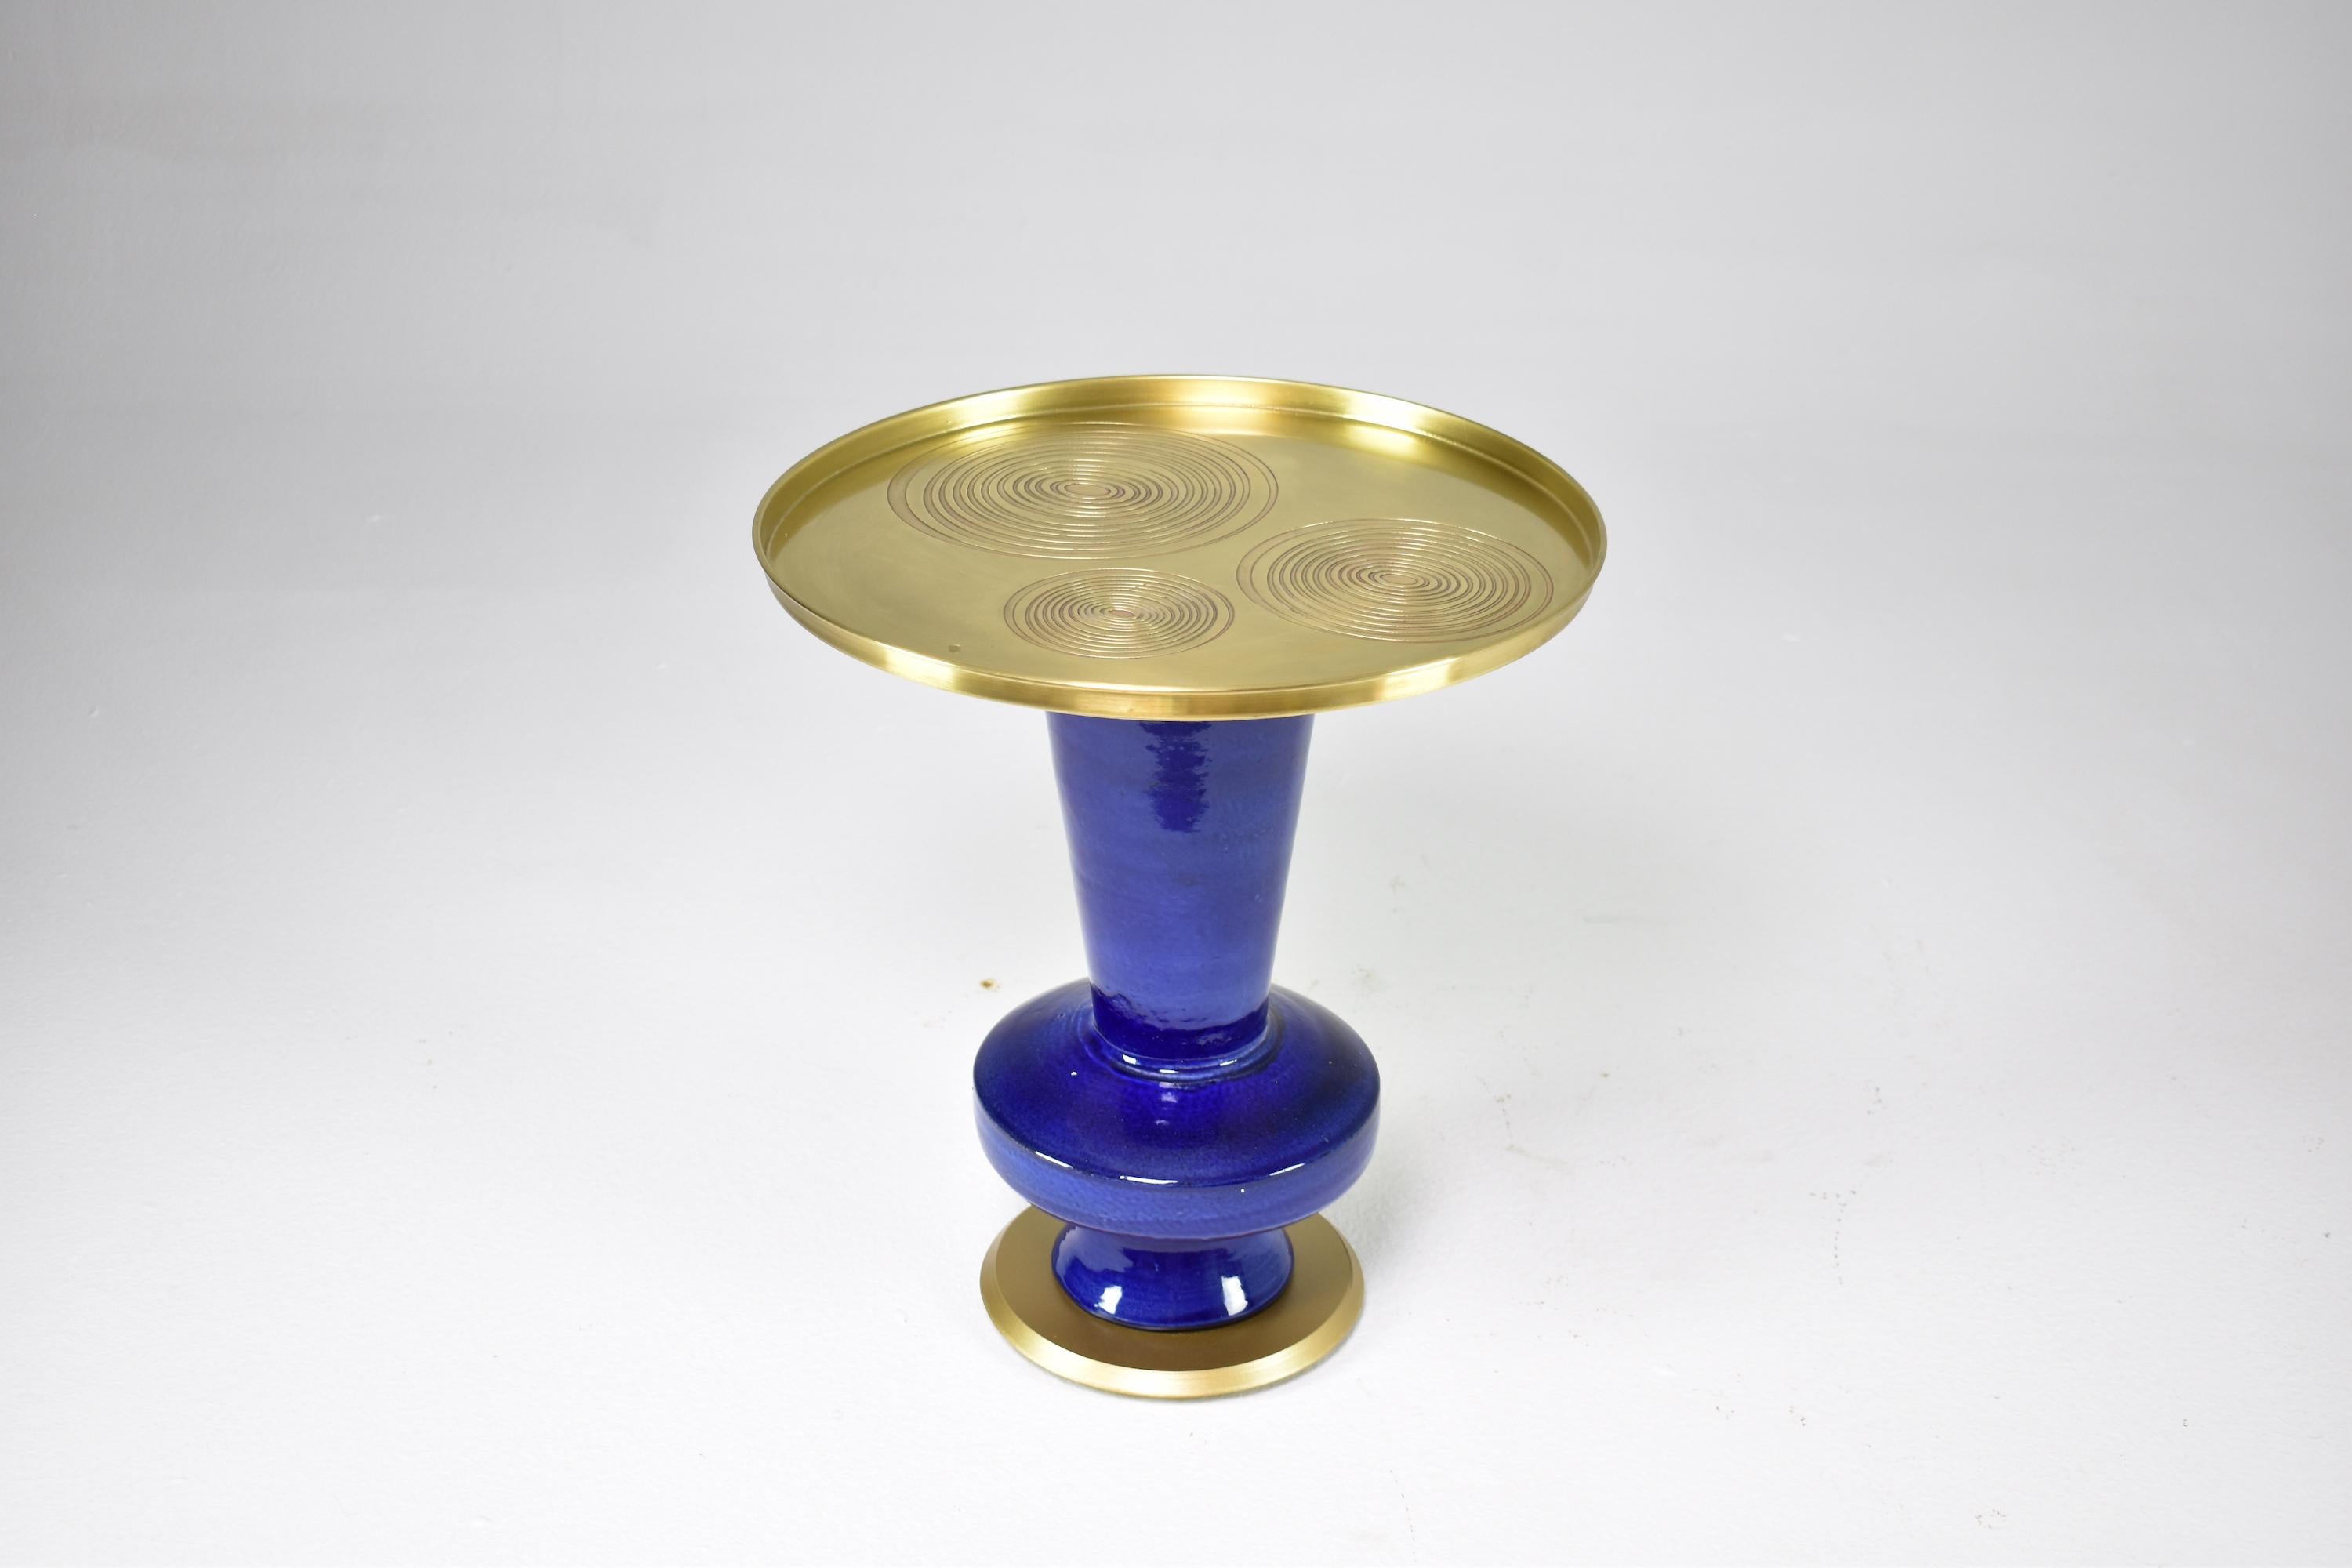 Cette table d'appoint en guéridon, unique en son genre, a été conçue par Jonathan Amar dans son atelier de Rabat. Elle se compose d'une structure en céramique émaillée bleue de forme organique et d'un plateau en laiton avec des détails circulaires